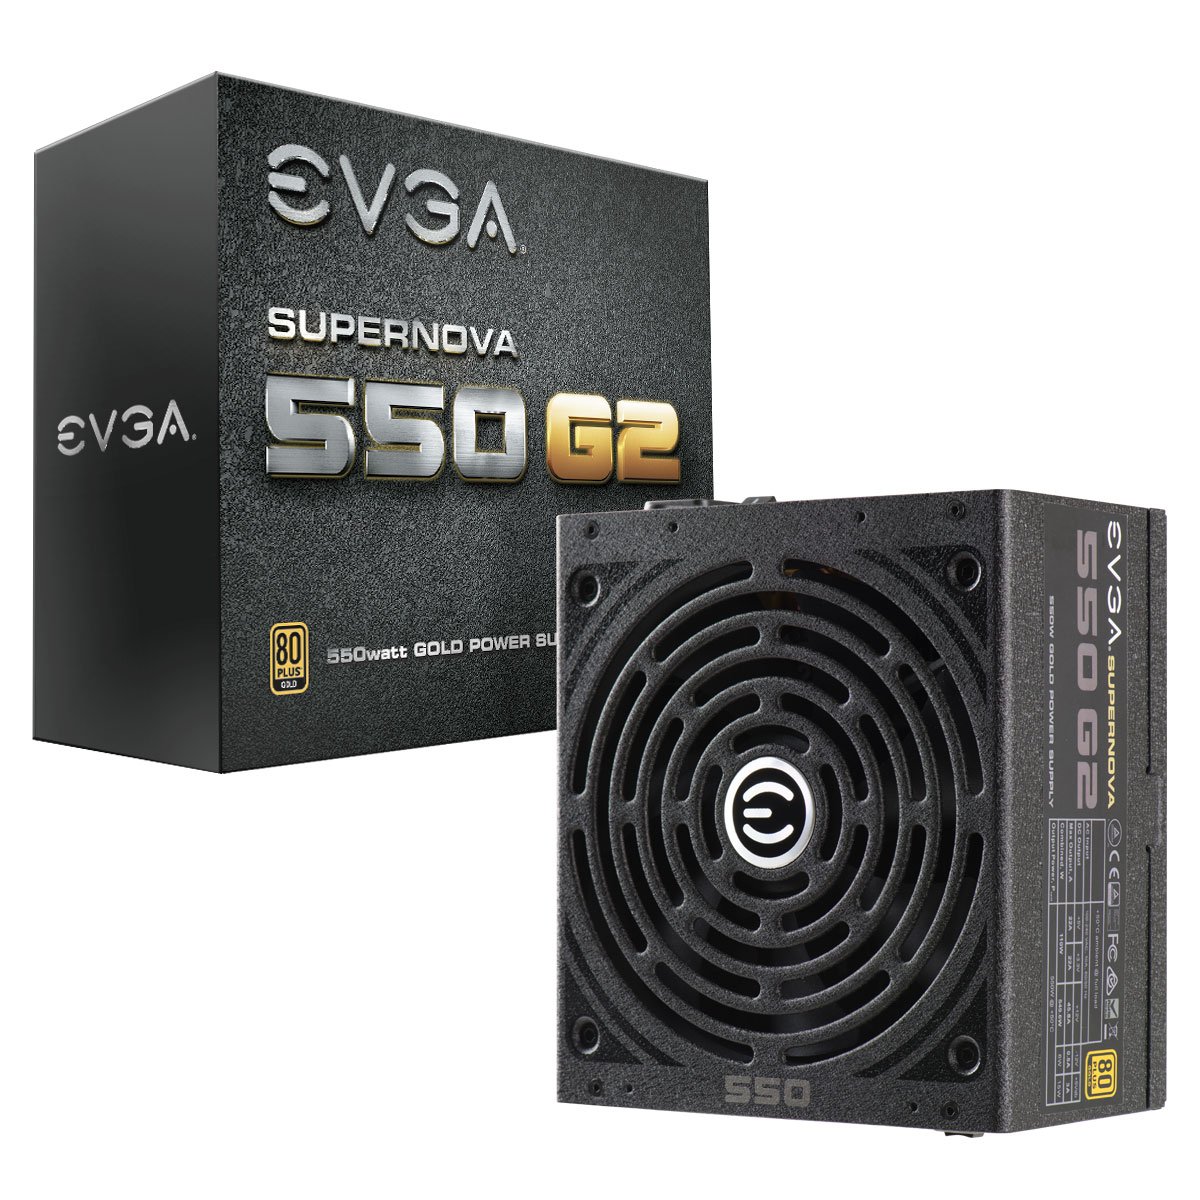 EVGA SuperNOVA 550 G2 Power Supply 220-G2-0550-Y1 UPC 843368034801 - EVGA